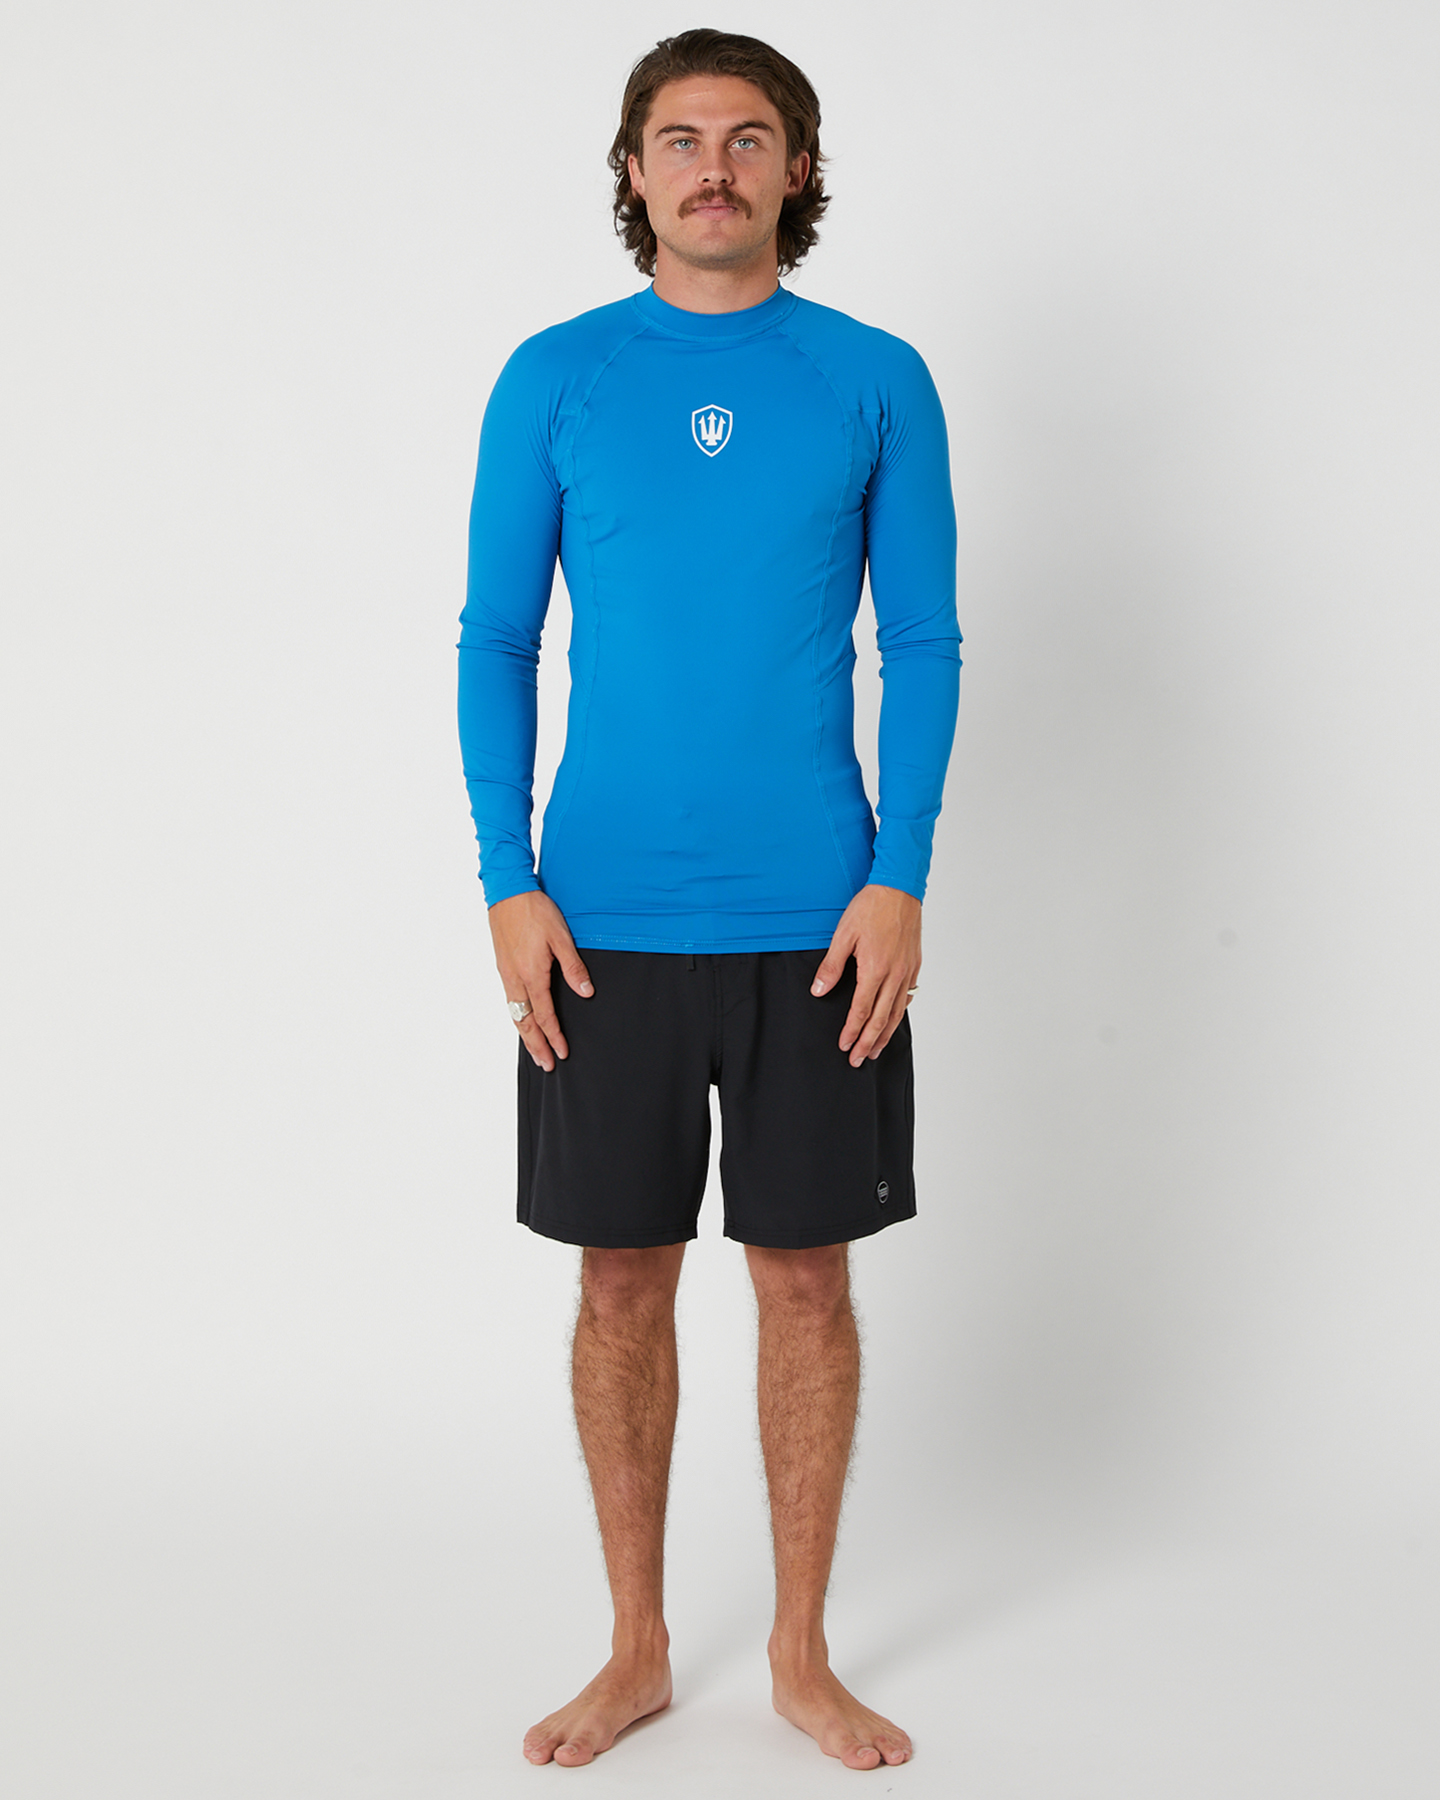 Fk Surf Mens Long Sleeve Rash Shirt - Blue | SurfStitch